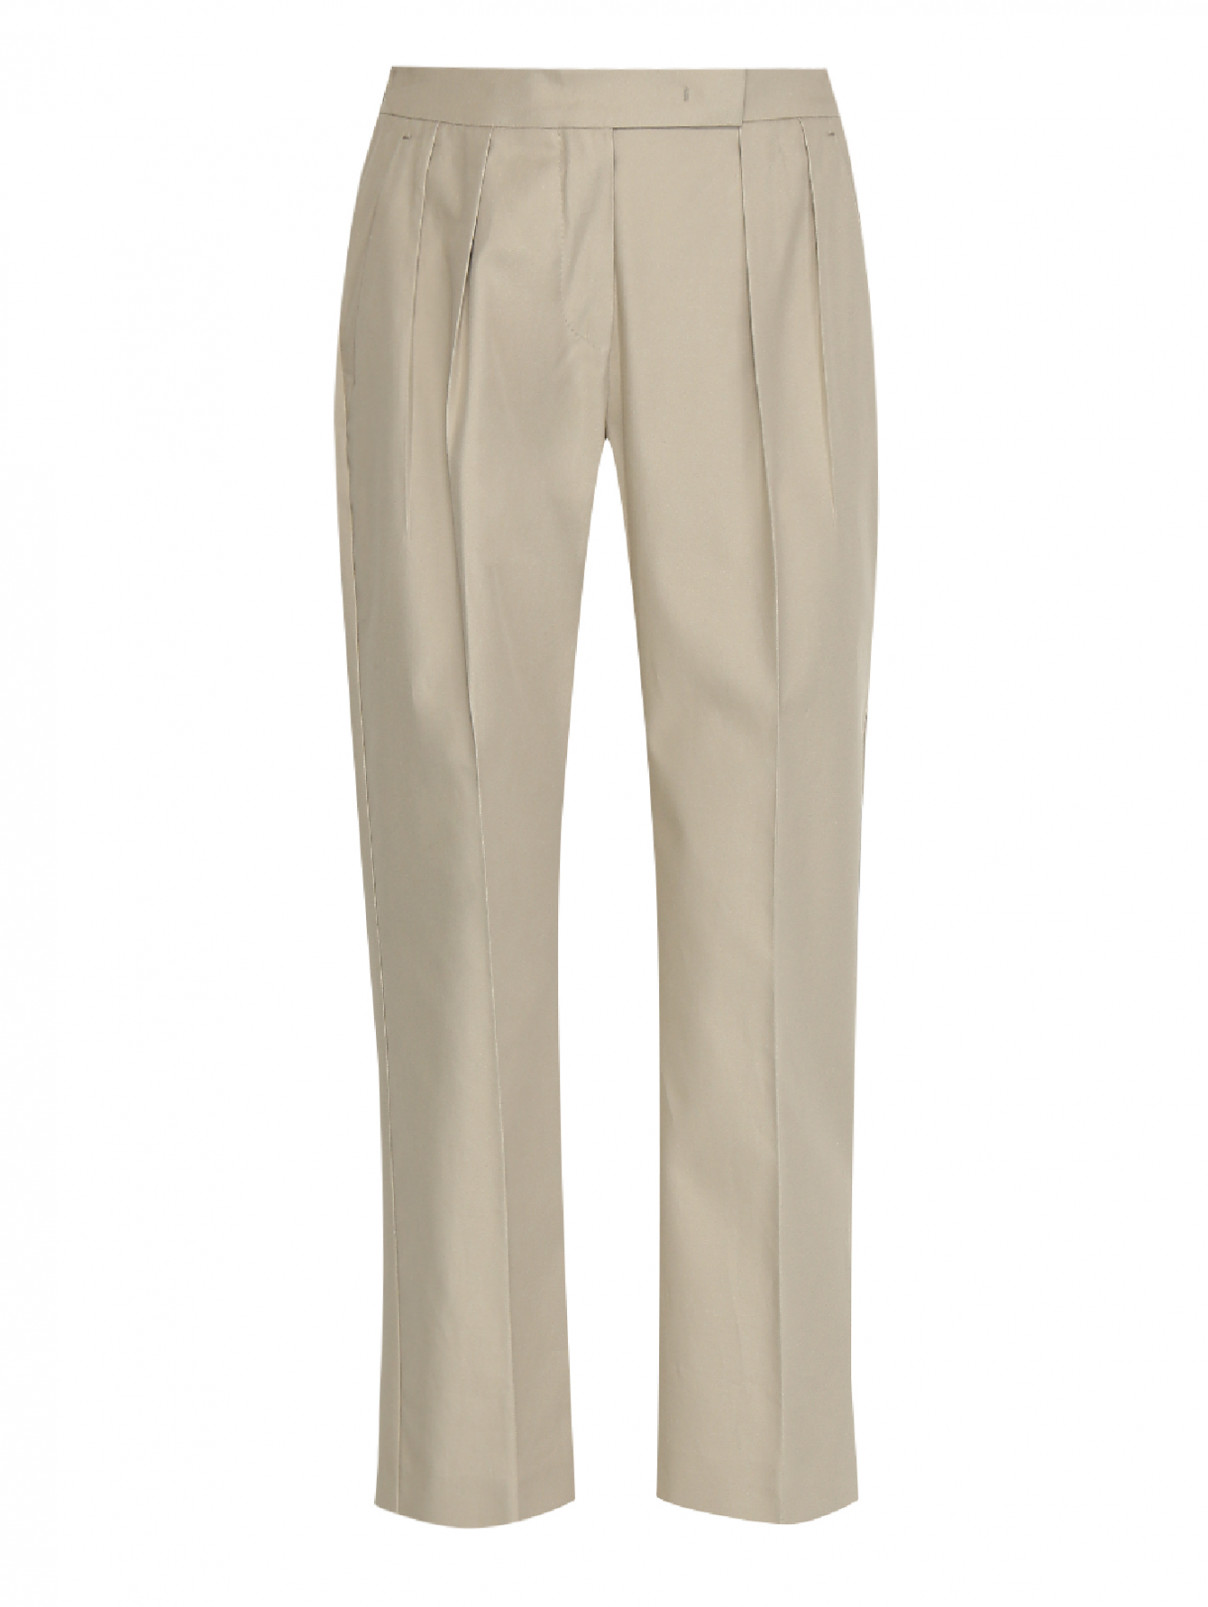 Укороченные брюки из хлопка с защипами Max Mara  –  Общий вид  – Цвет:  Зеленый